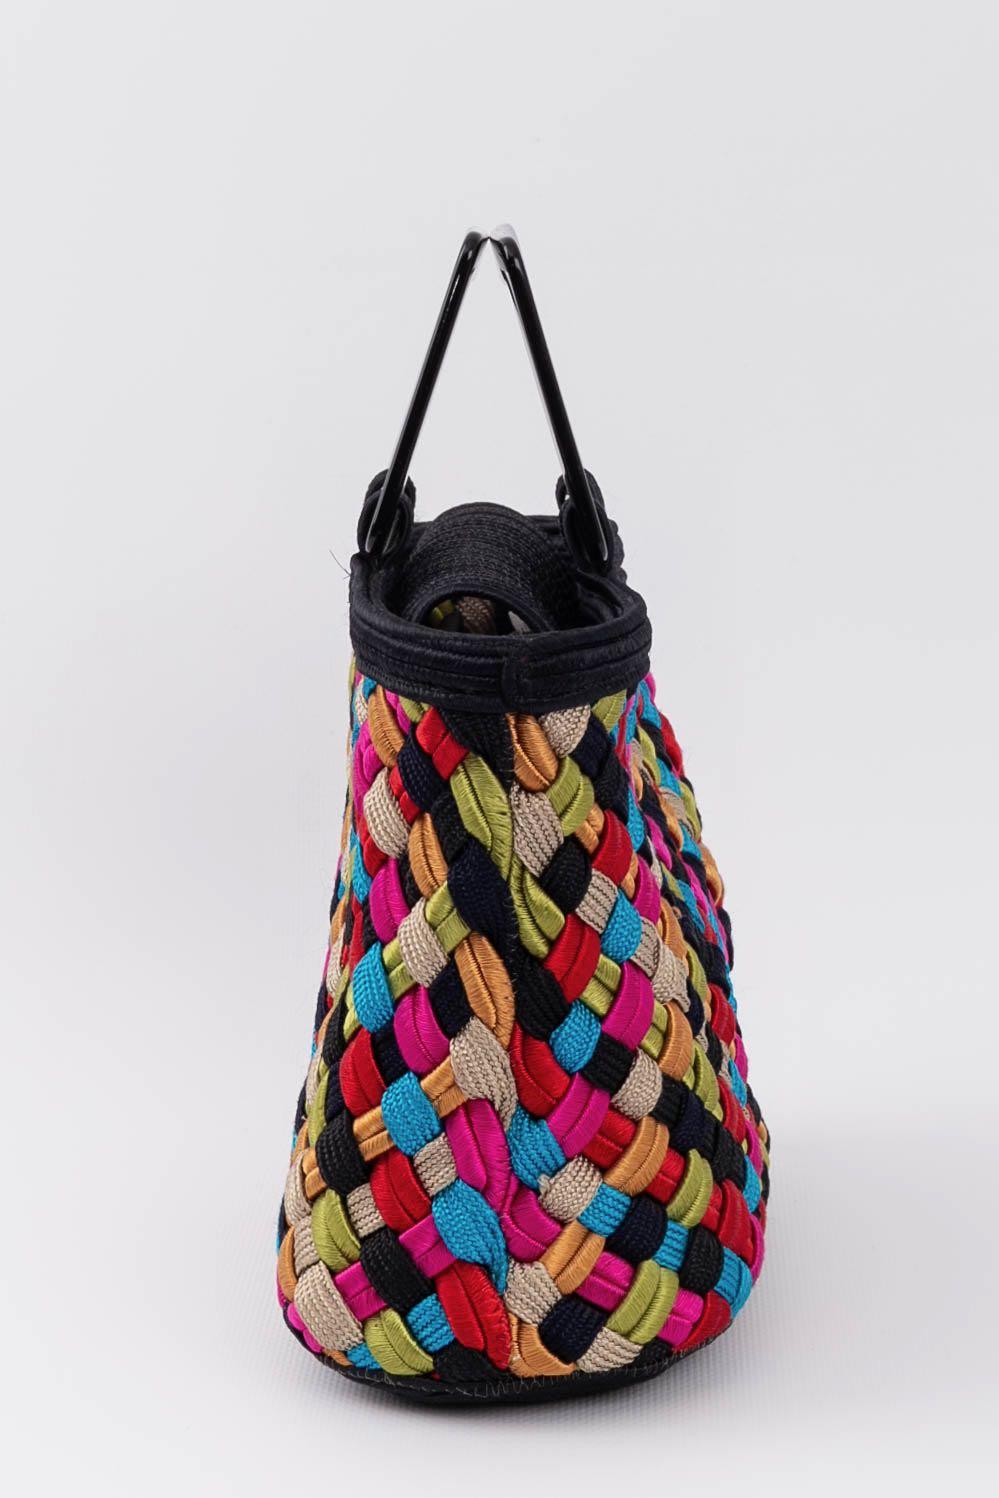 Yves Saint Laurent Multicoloured Trimmings Bag In Excellent Condition For Sale In SAINT-OUEN-SUR-SEINE, FR